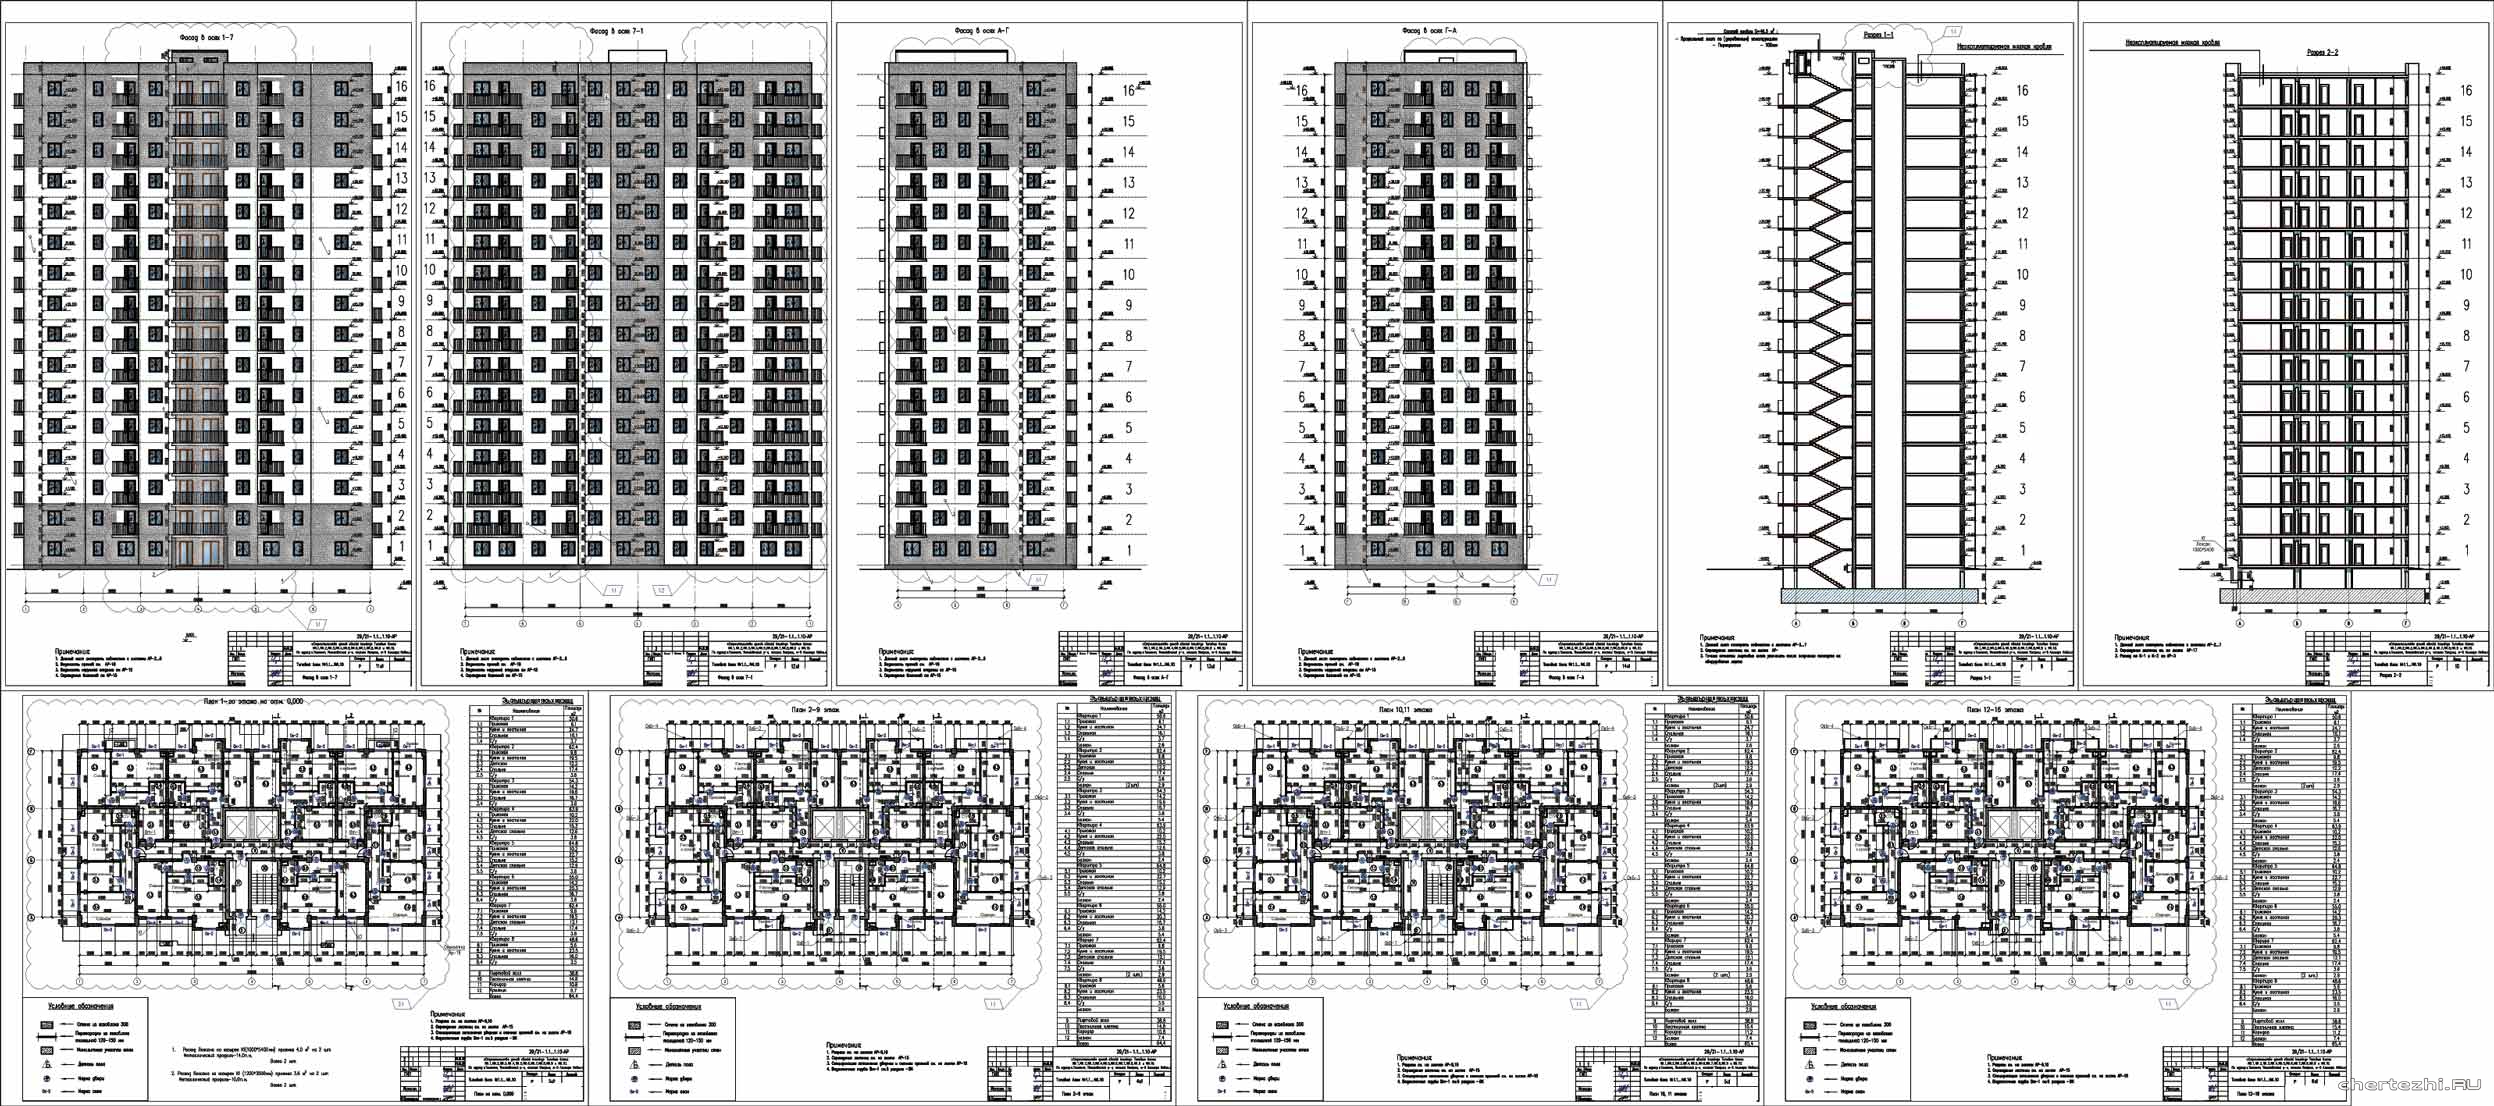 АР ГП КЖ ОВ ВК ЭОМ ПС 16-ти этажный жилой дом на 128 квартир 34,8 х 16,8 м в г. Ташкент